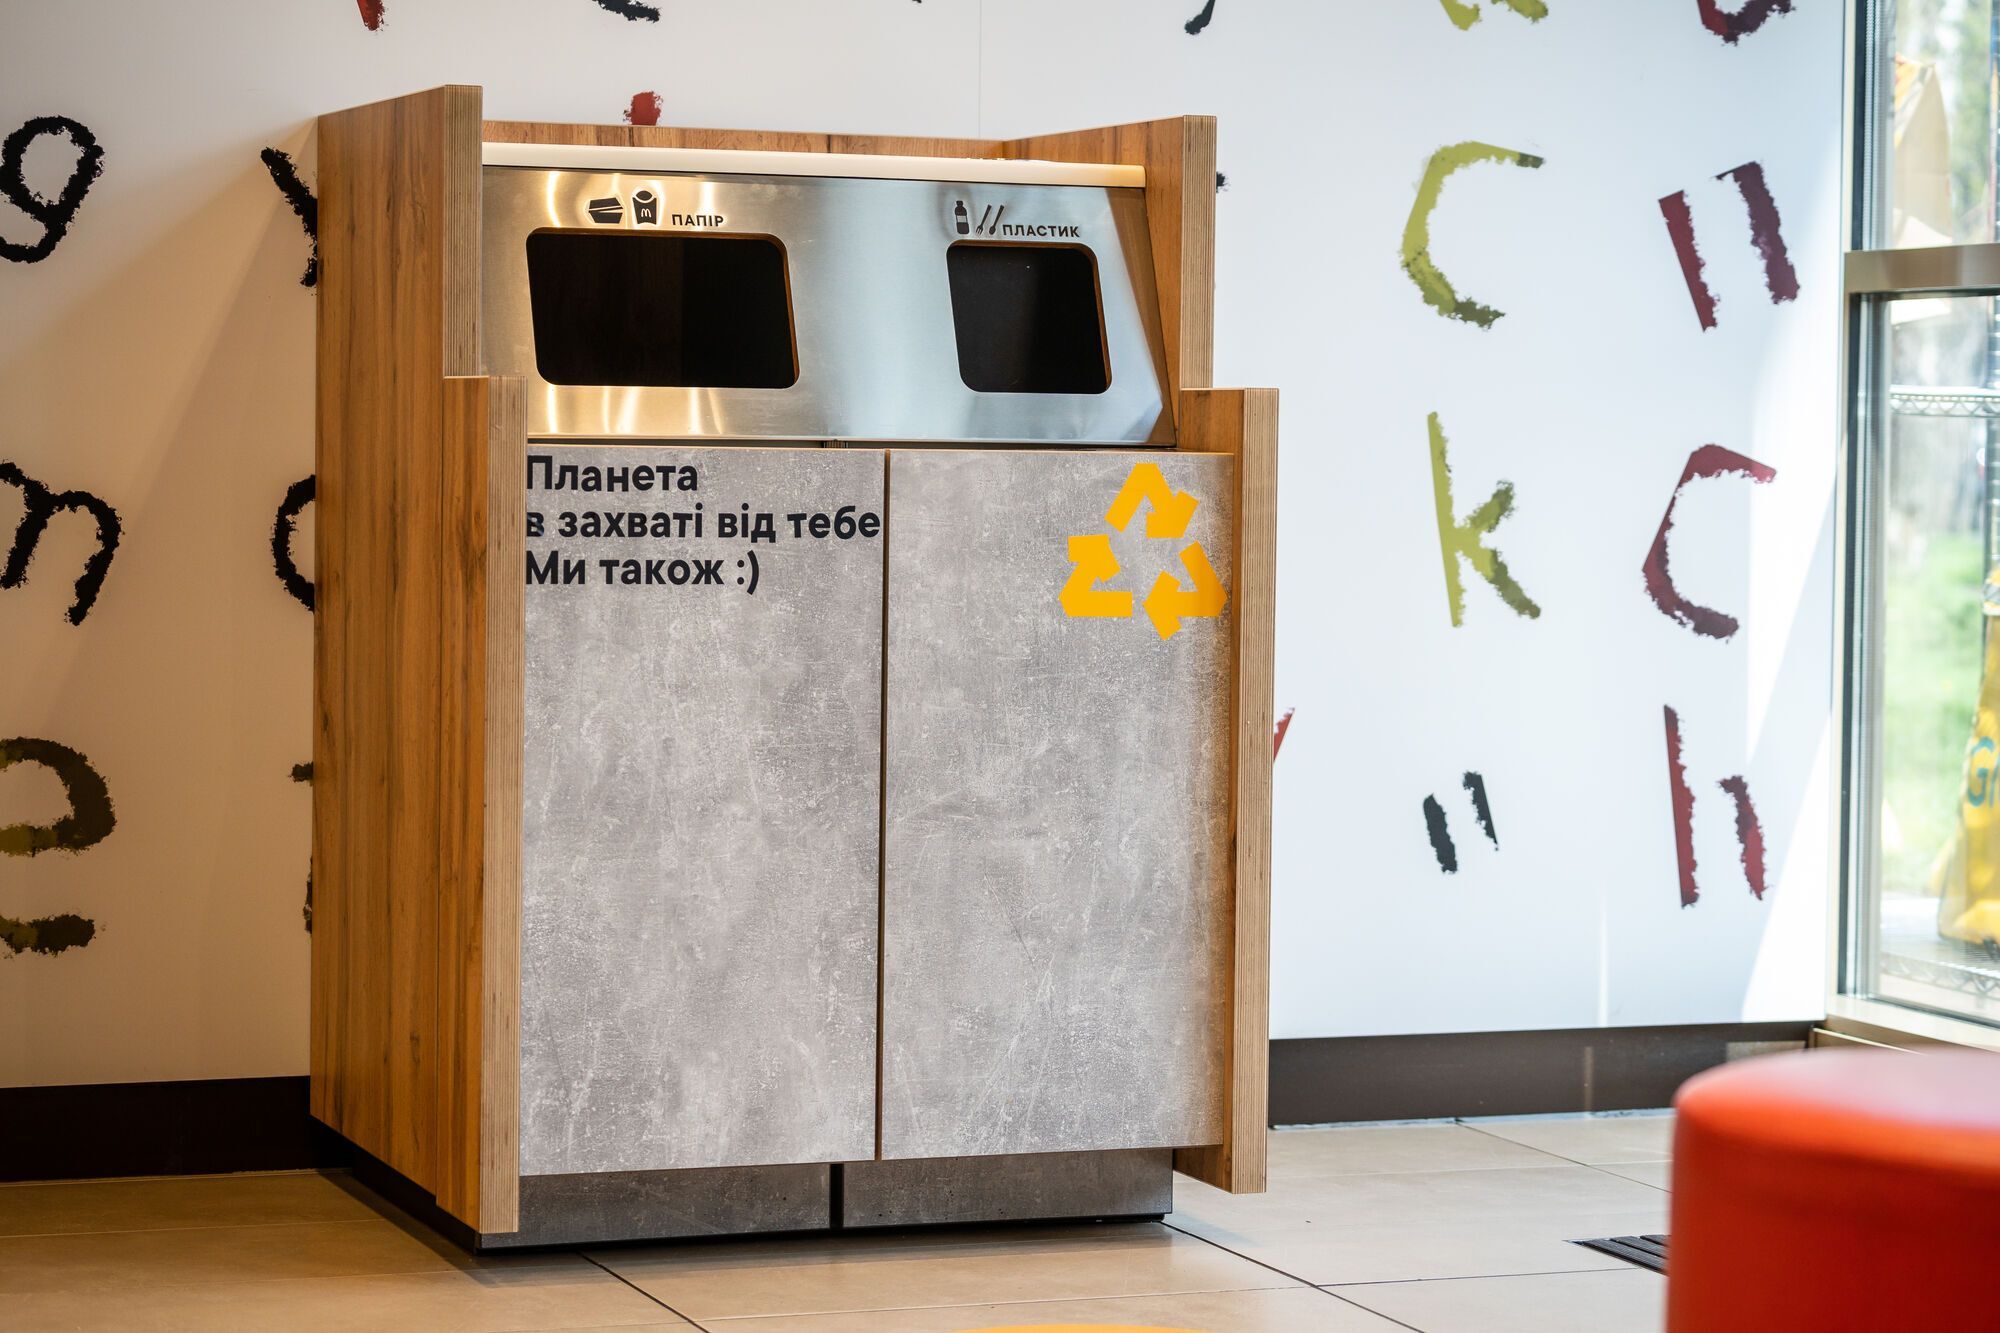 Сортировочная станция для разделения отходов в McDonald's